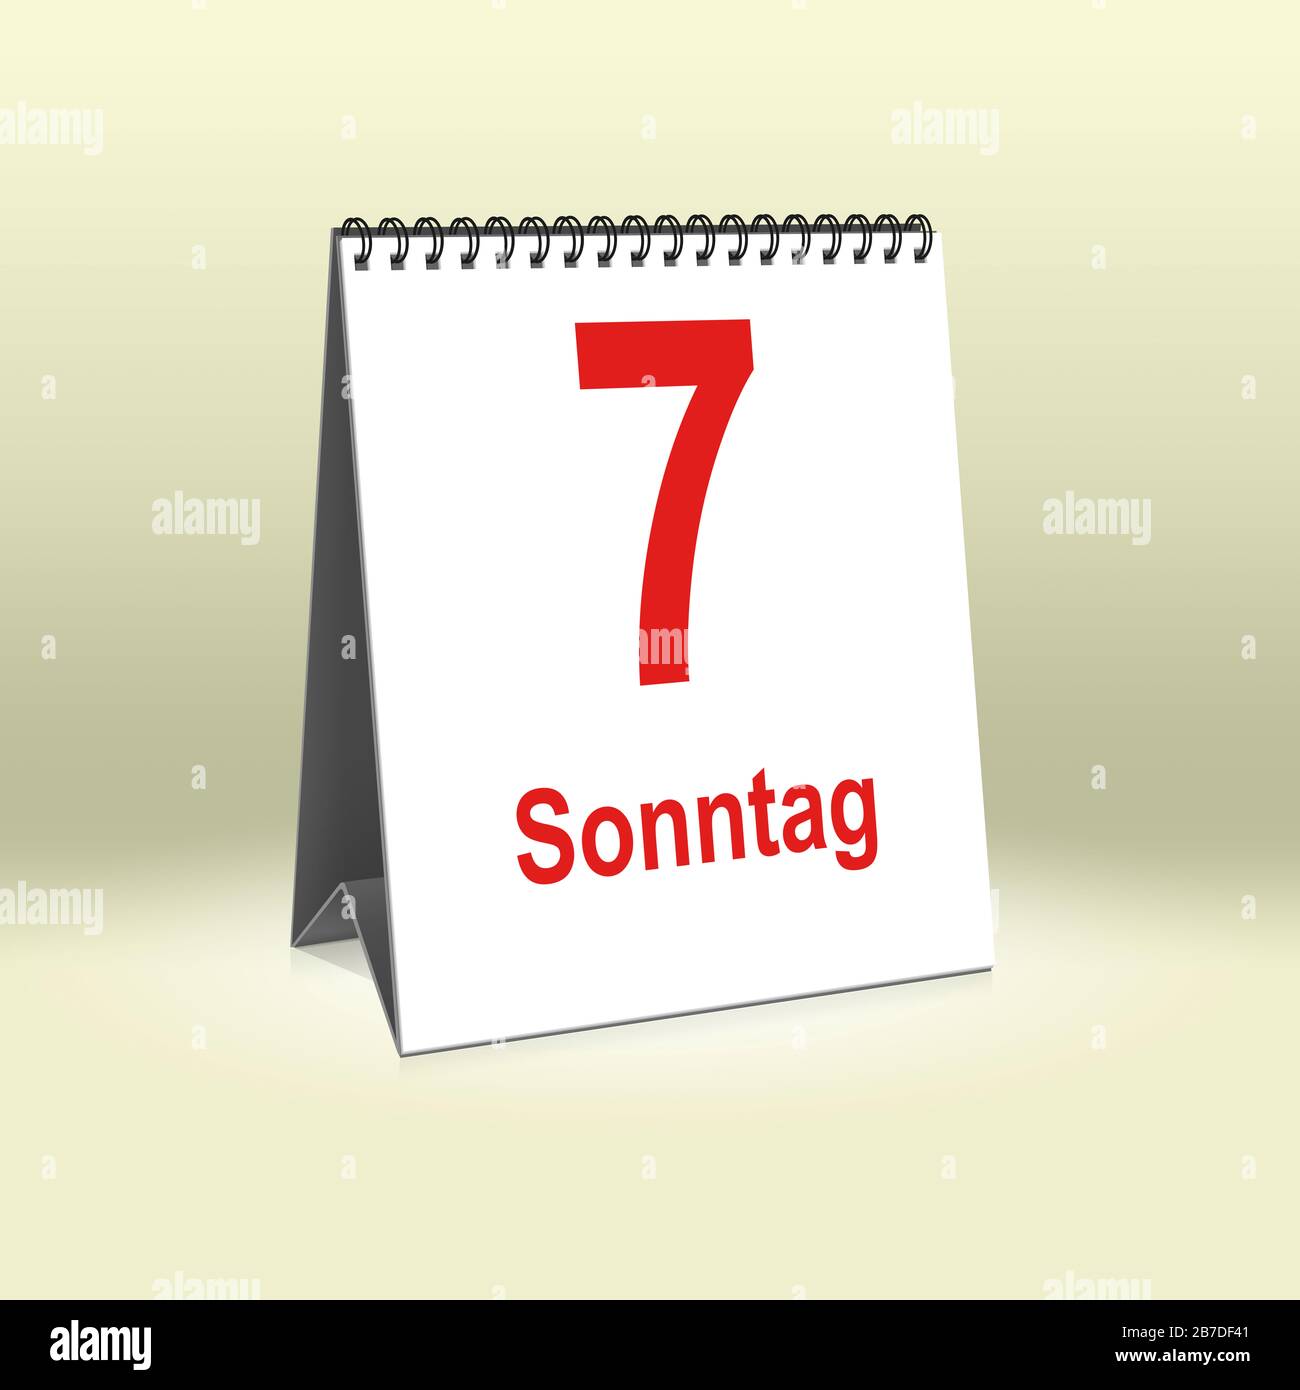 A calendar in German language shows Sunday 7th | Ein Kalender für den Schreibtisch zeigt Sonntag 7. Stock Photo